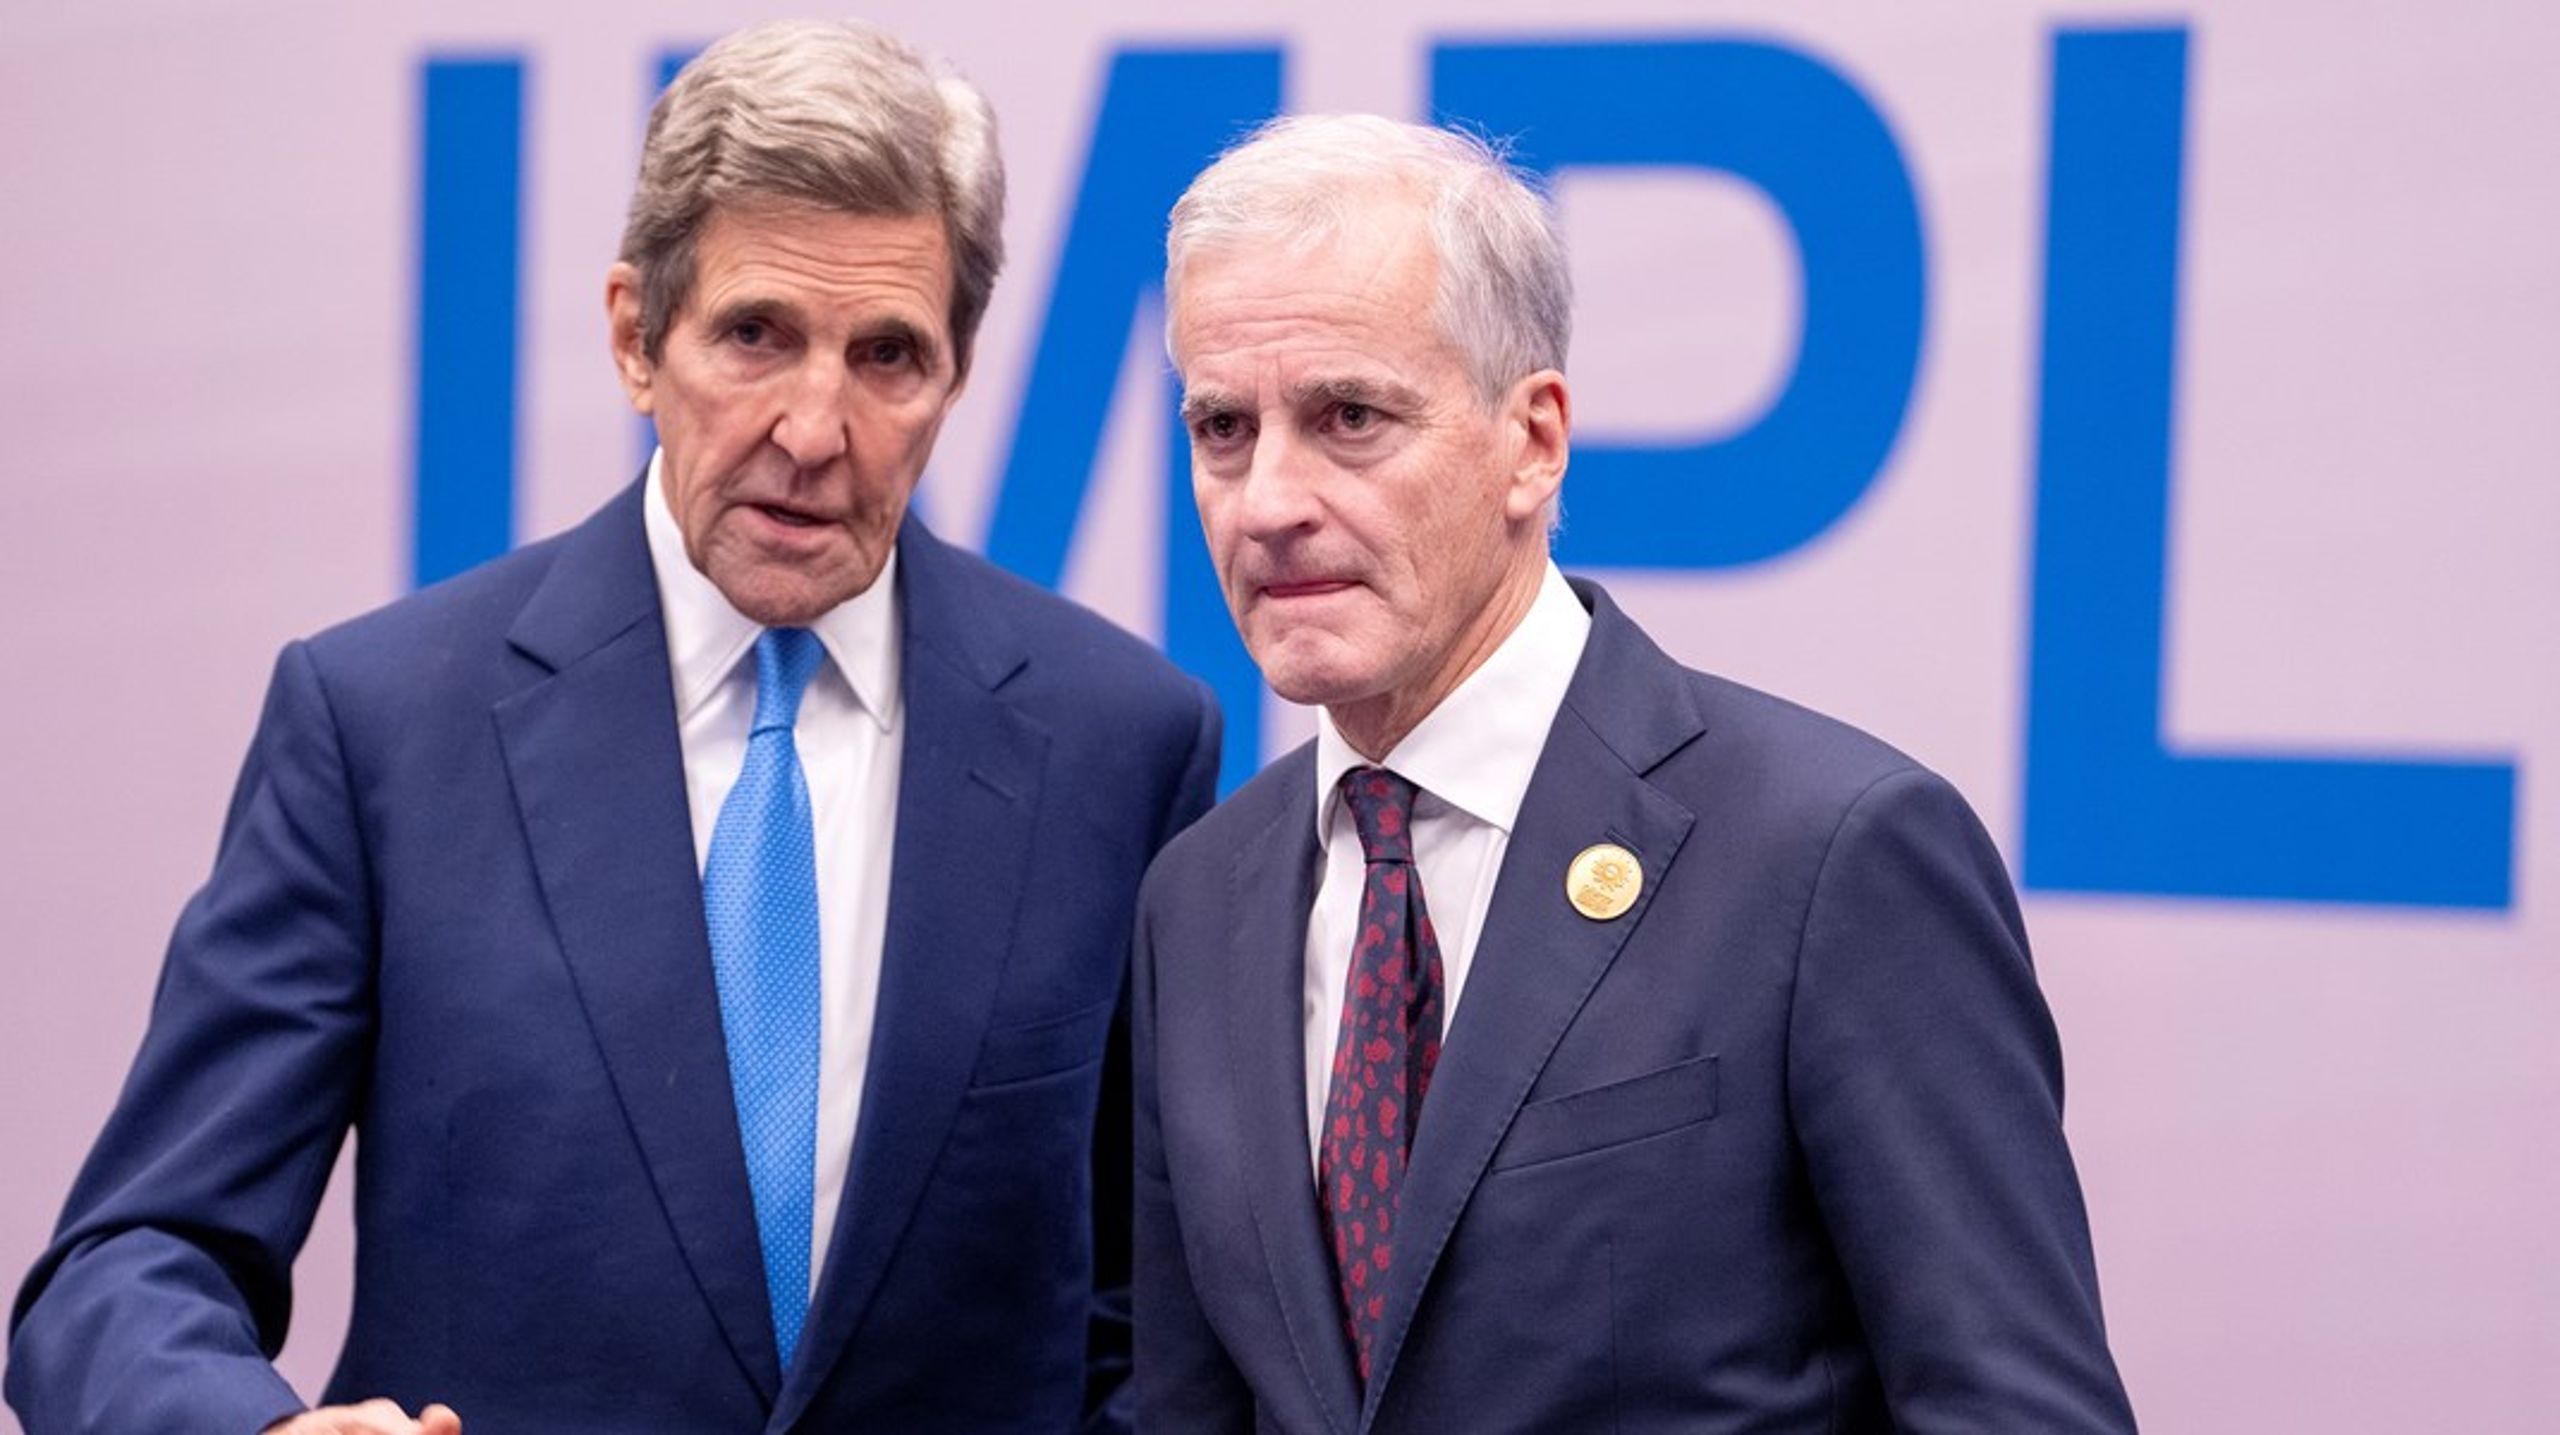 &nbsp;USAs klimautsending John Kerry og statsminister Jonas Gahr Støre møttes under klimatoppmøtet COP27 mandag. Kerry representerer en versting for klimafinansiering, mens Norge er blant de beste i klassen, ifølge en ny analyse.